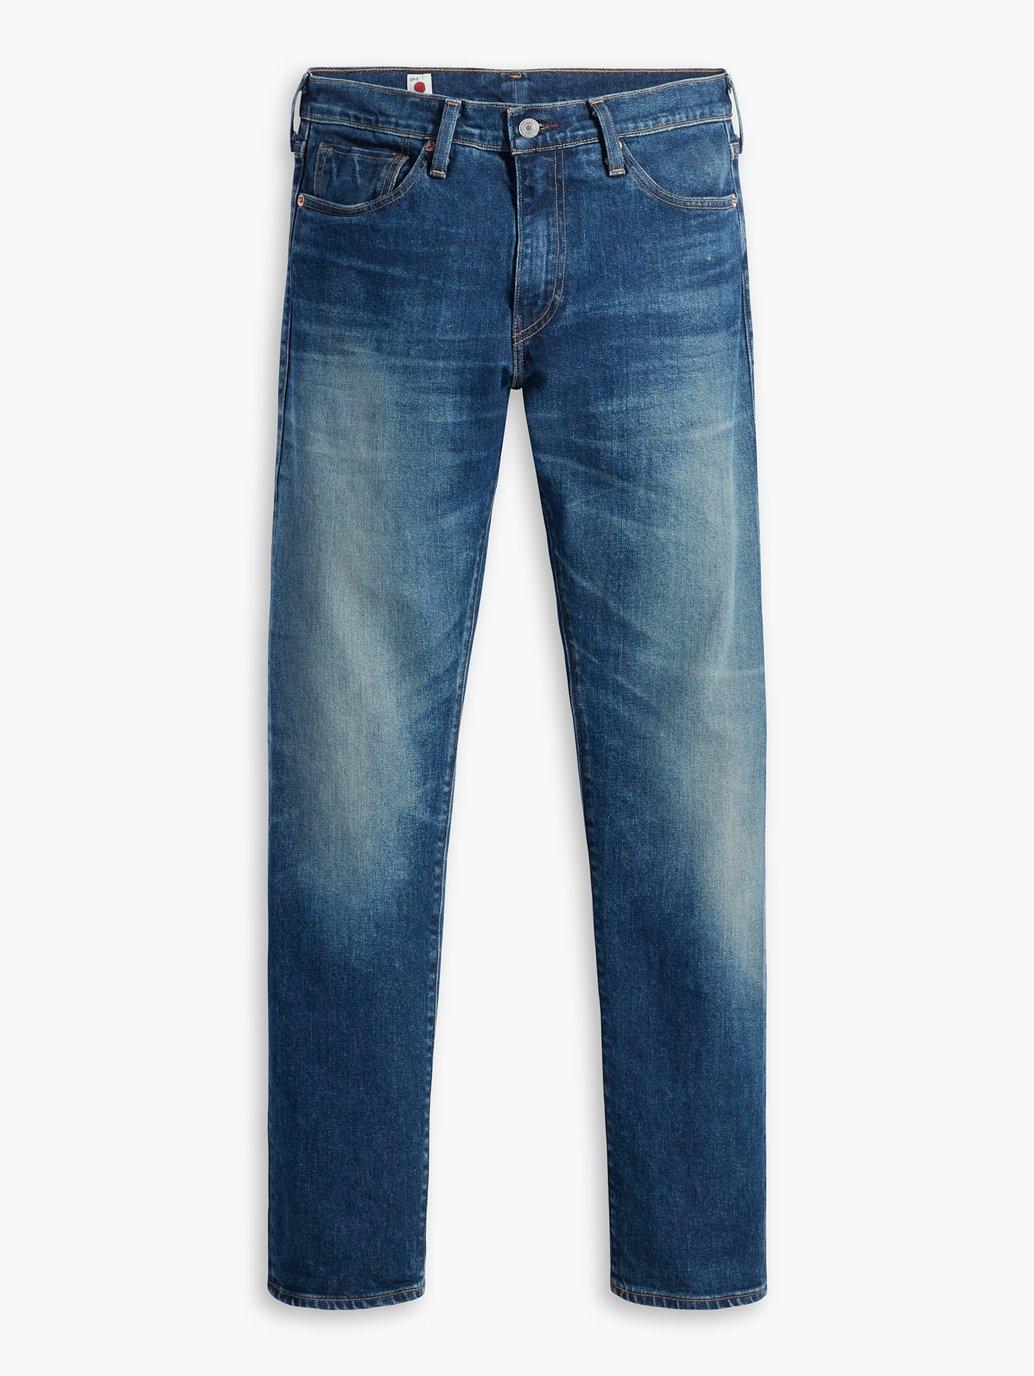 Buy Levi's® Men's 511™ Slim Jeans| Levi’s Official Online Store SG